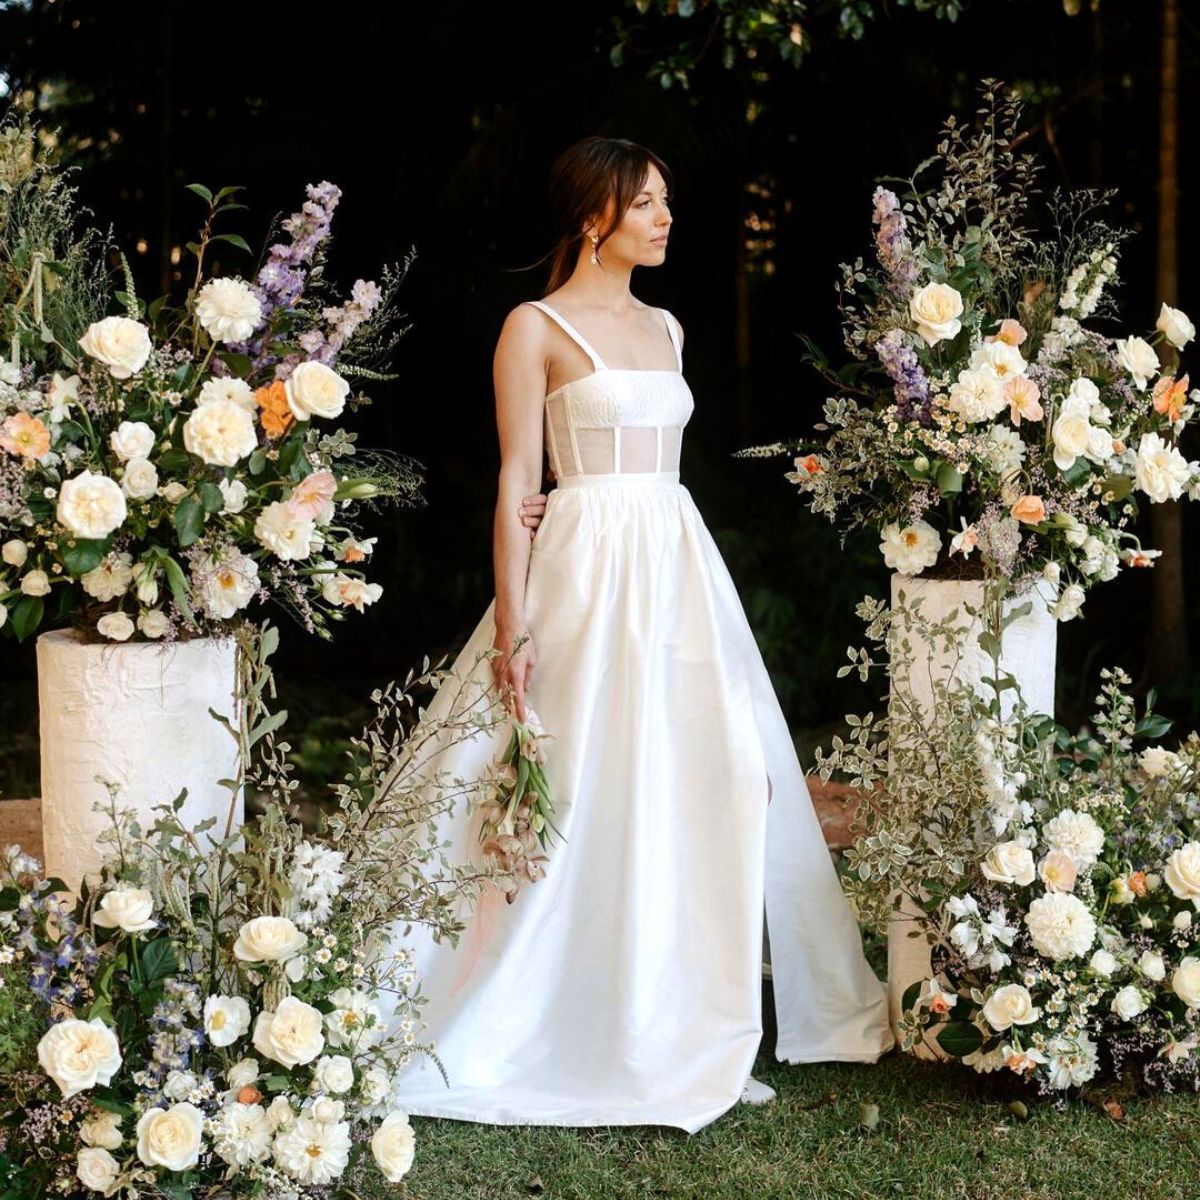 Wedding floral creations by Maddie Jayne